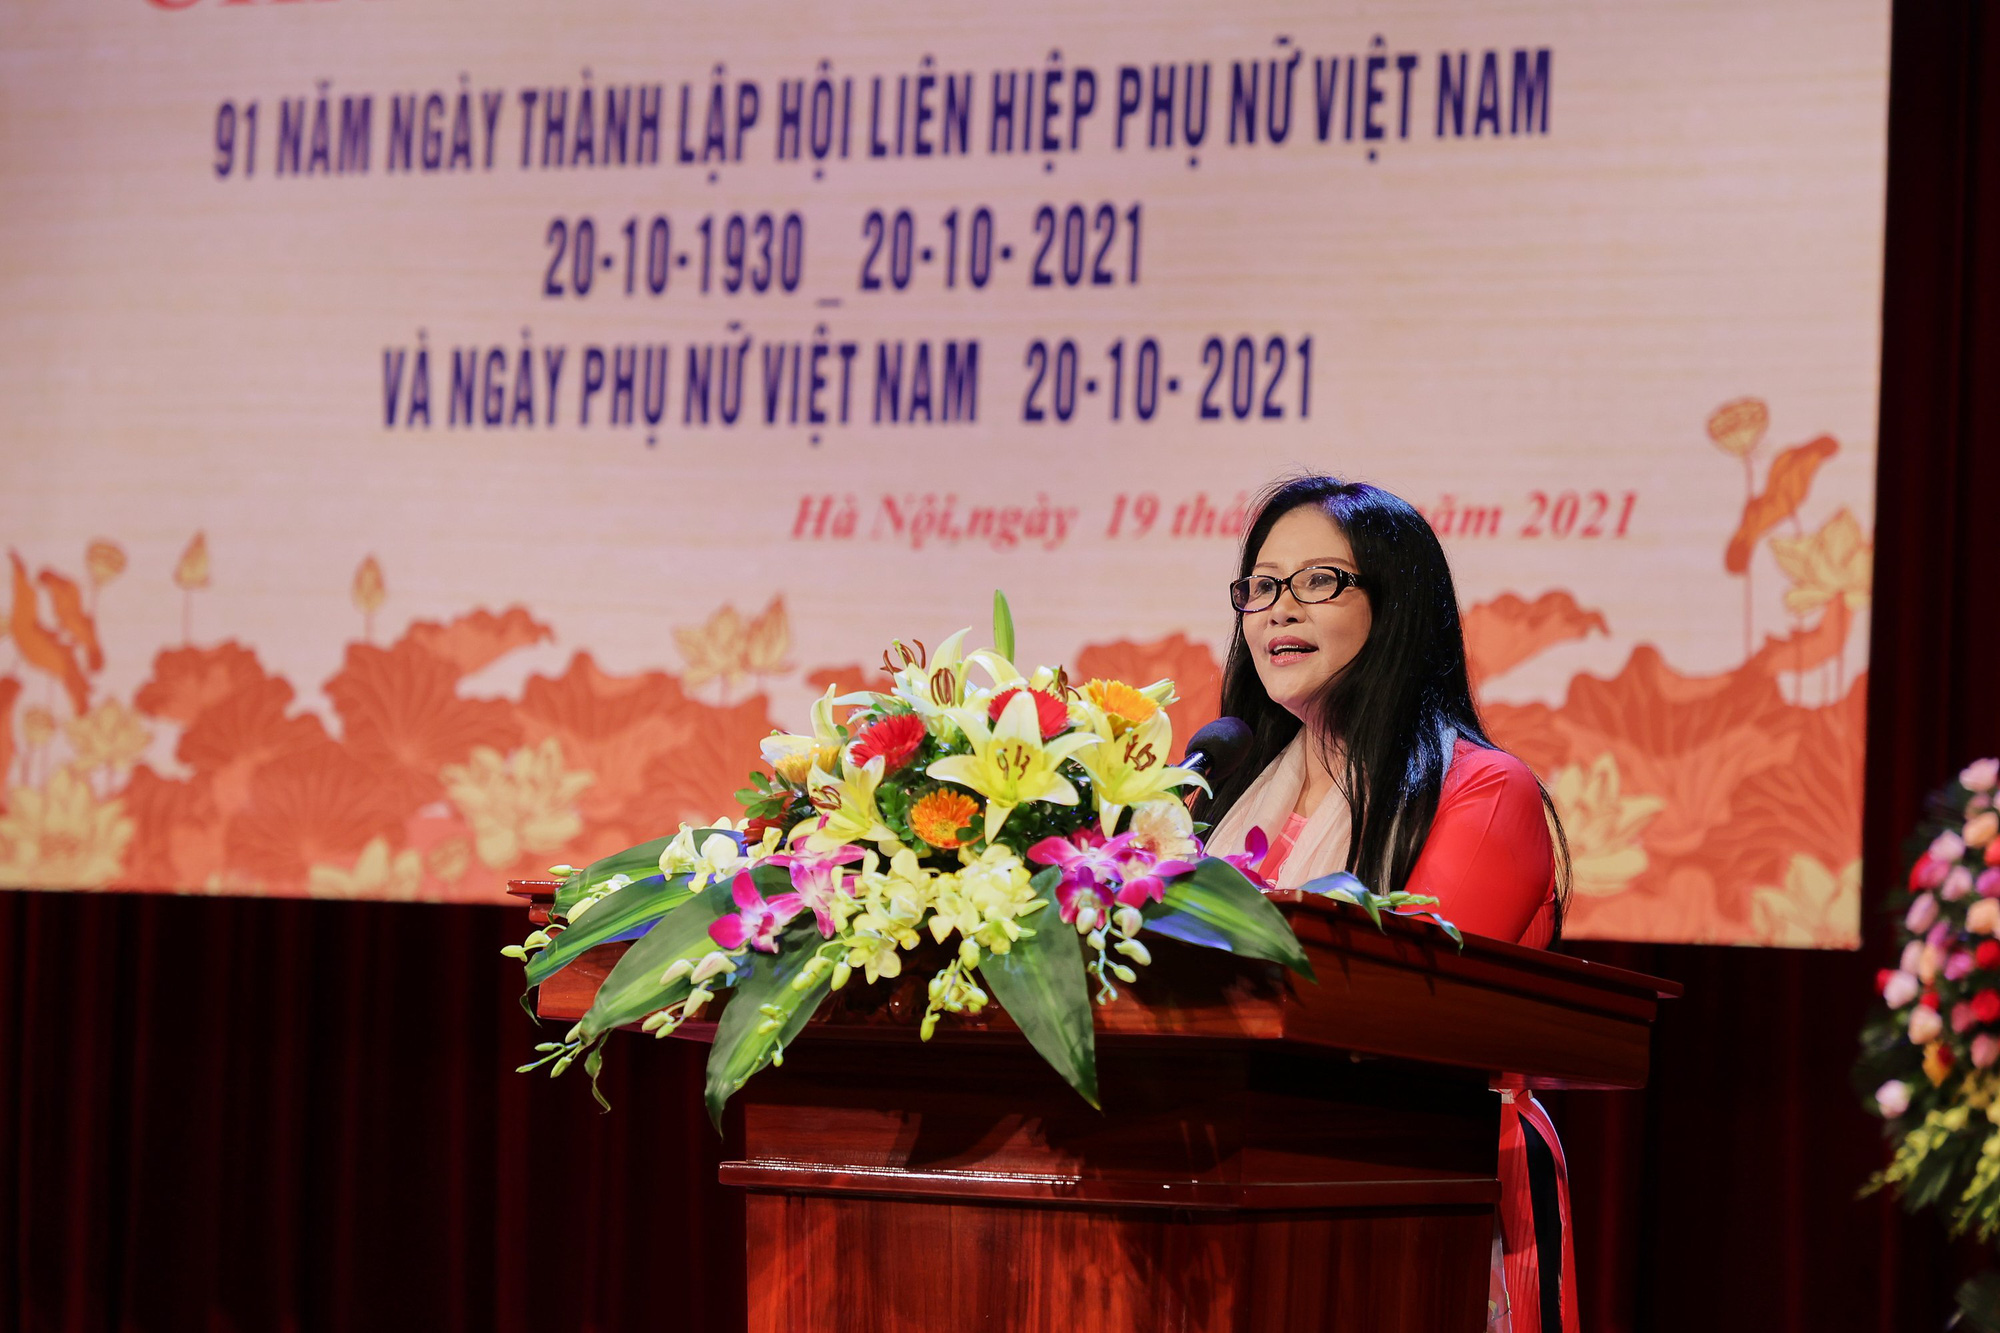 Bộ VHTTDL tổ chức gặp mặt kỷ niệm 91 năm ngày thành lập Hội Liên hiệp phụ nữ Việt Nam - Ảnh 3.